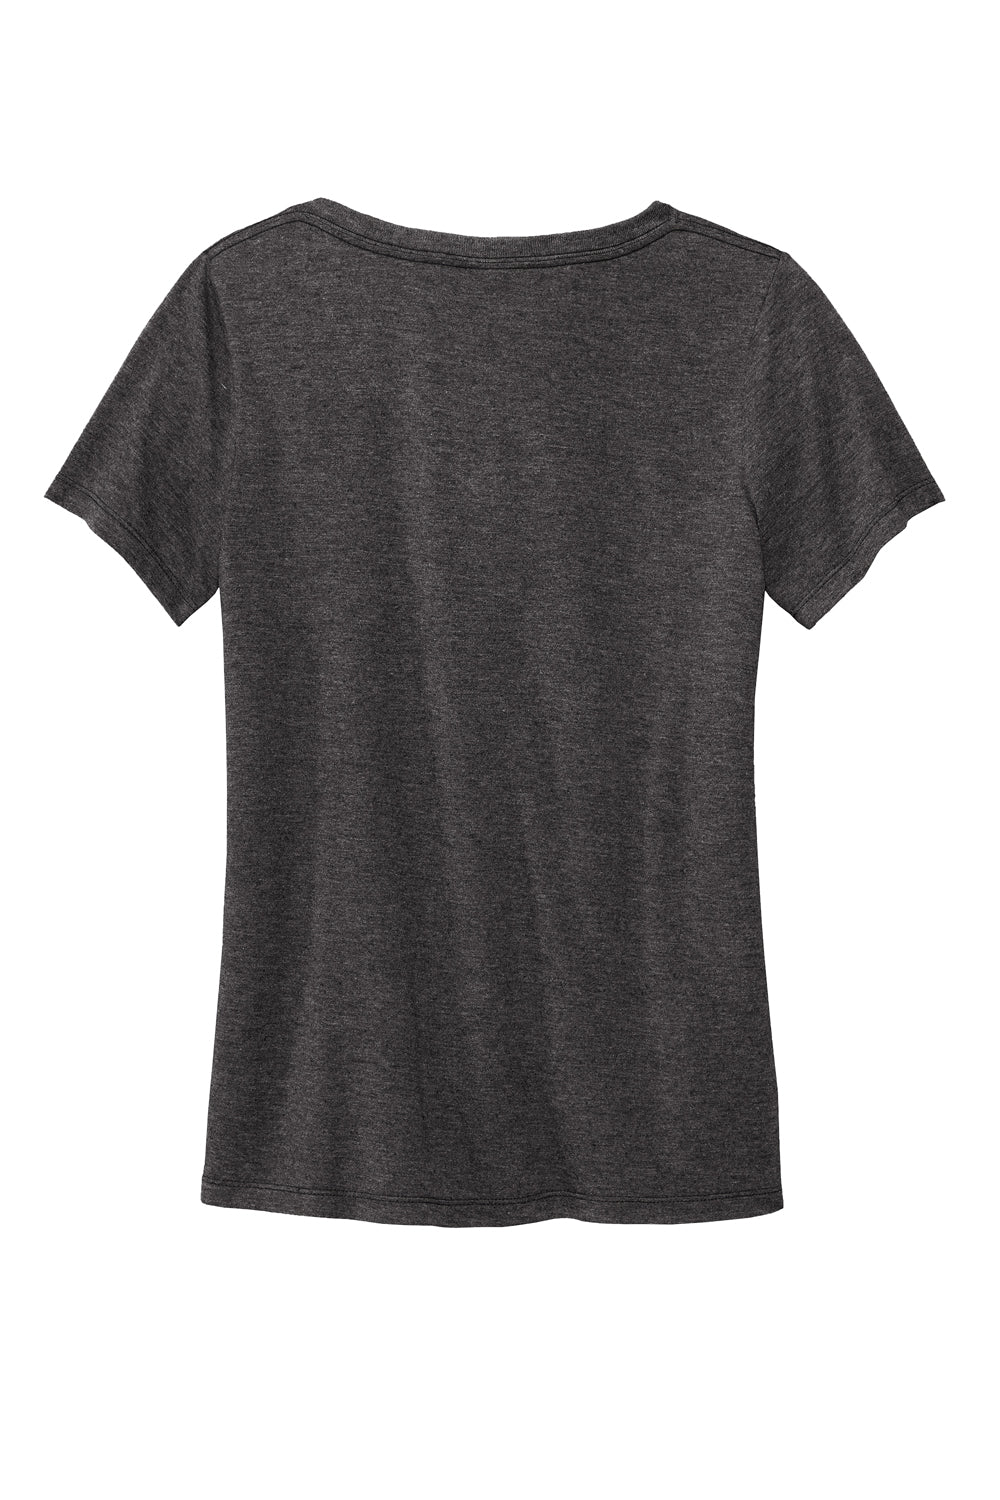 Volunteer Knitwear LVL45V USA Made Daily Short Sleeve V-Neck T-Shirt Heather Dark Grey Flat Back